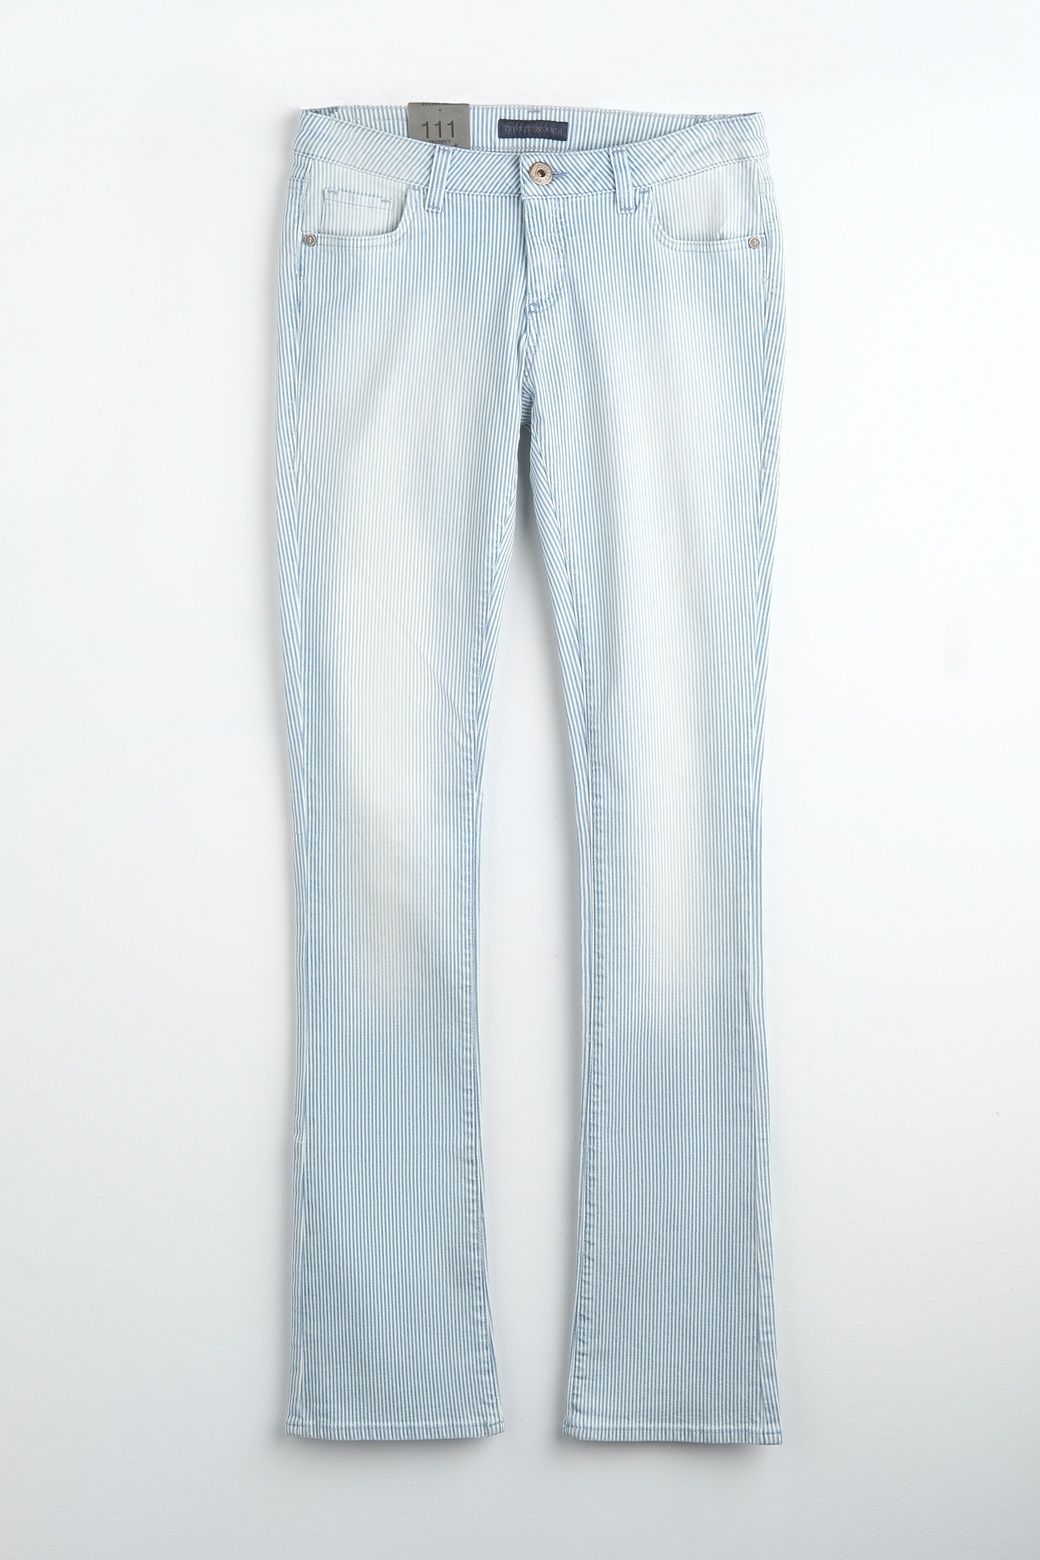 Джинсы Trussardi Jeans 56575R, голубой в полоску, 28 фото